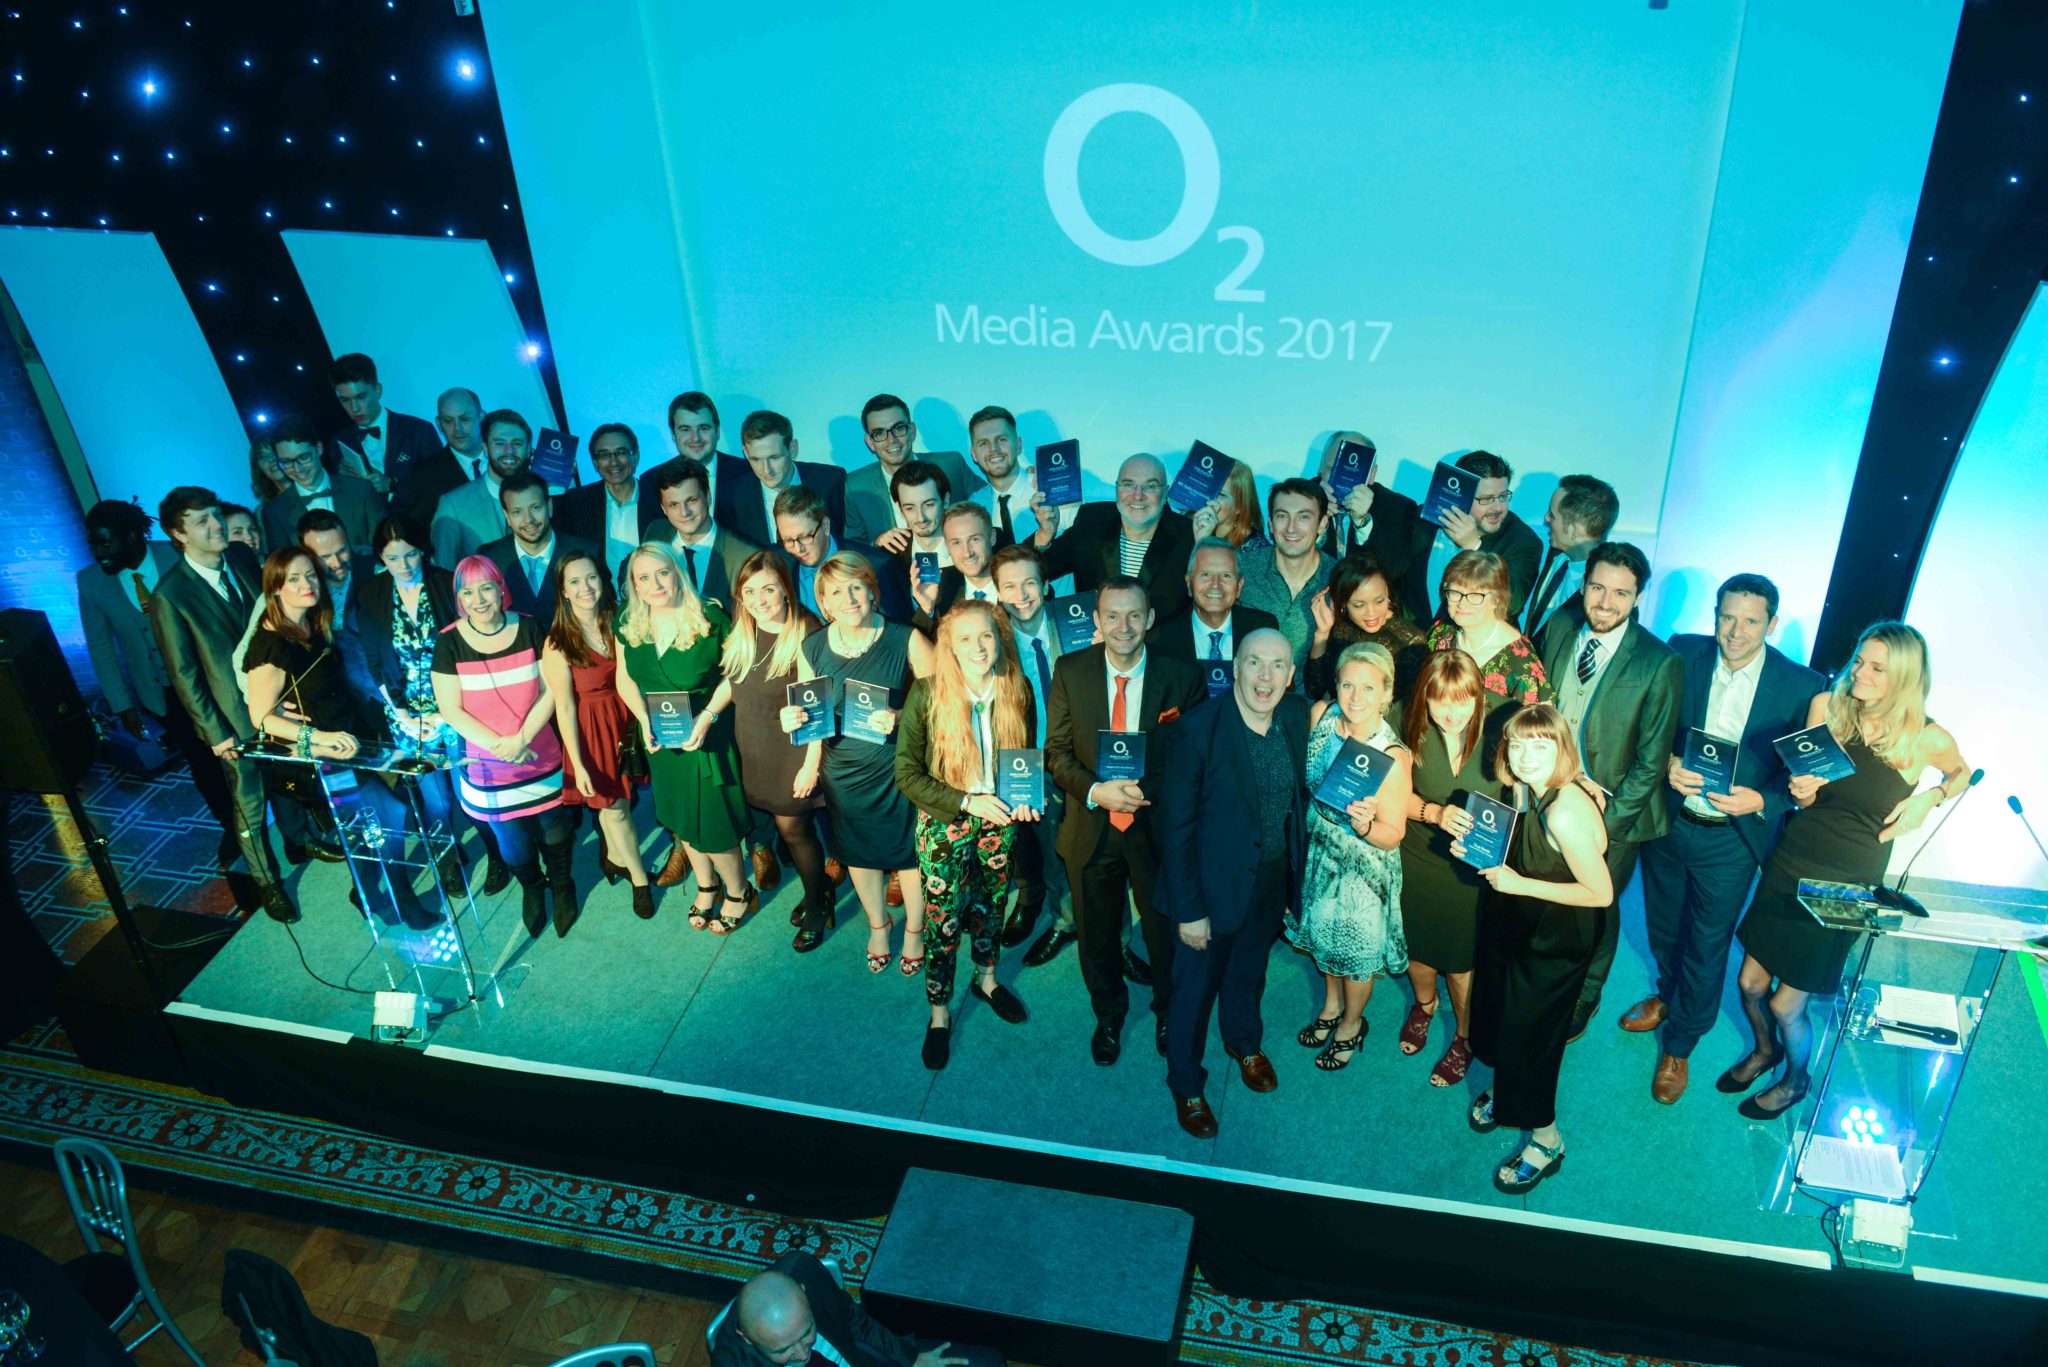 BBC and ITV honoured at O2 Media Awards